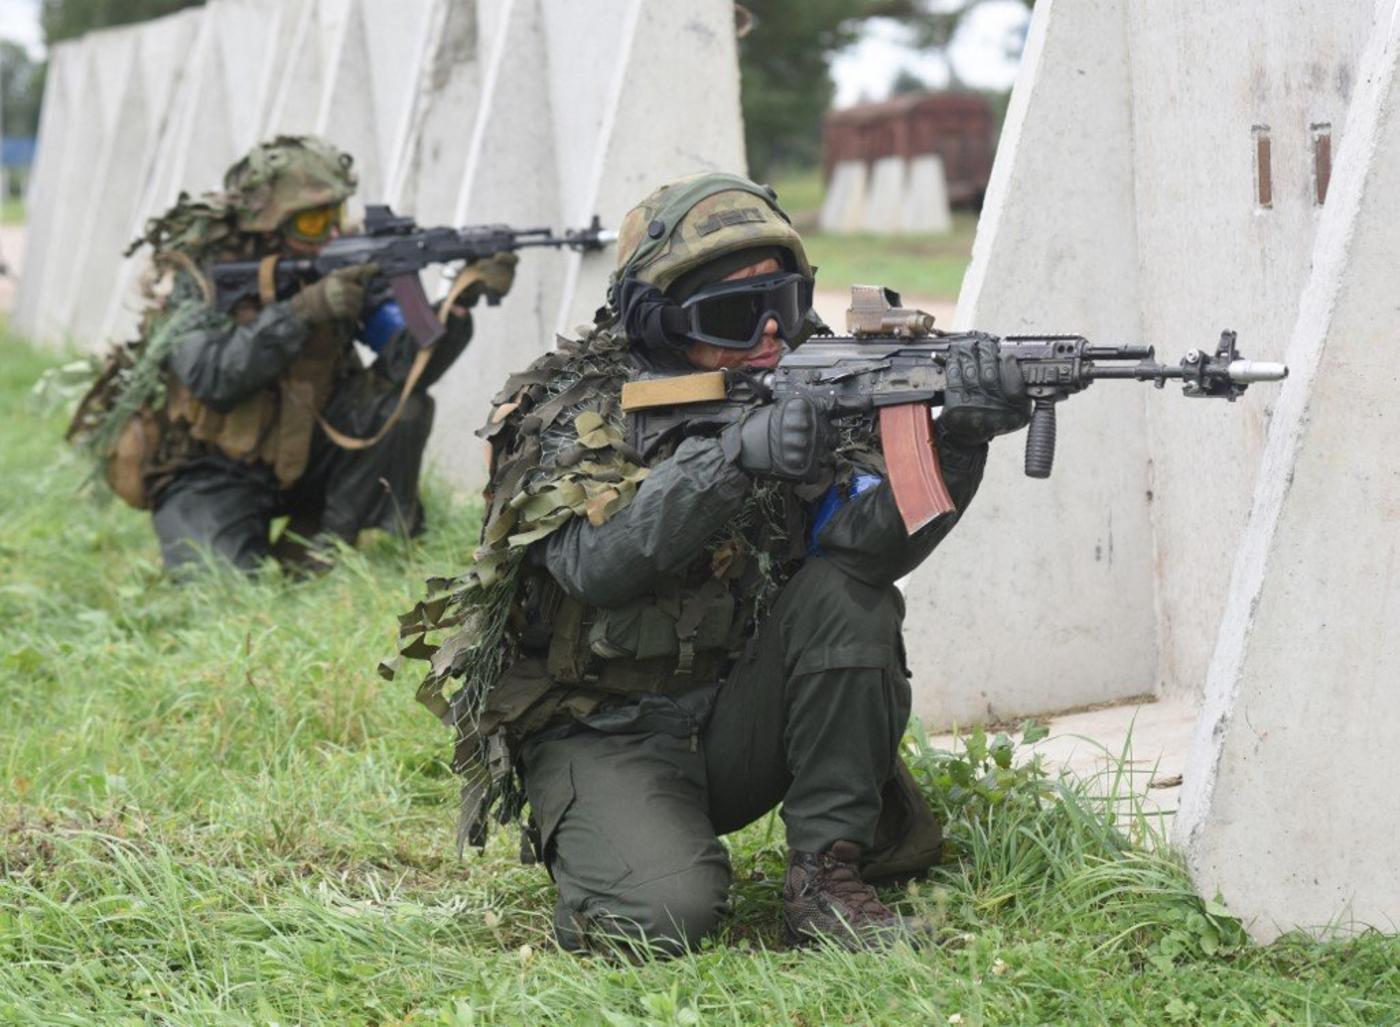 Des militaires ukrainiens participent aux exercices militaires conjoints Rapid Trident avec les États-Unis et d’autres pays de l’OTAN, près de Lviv, le 24 septembre 2021 (AFP)